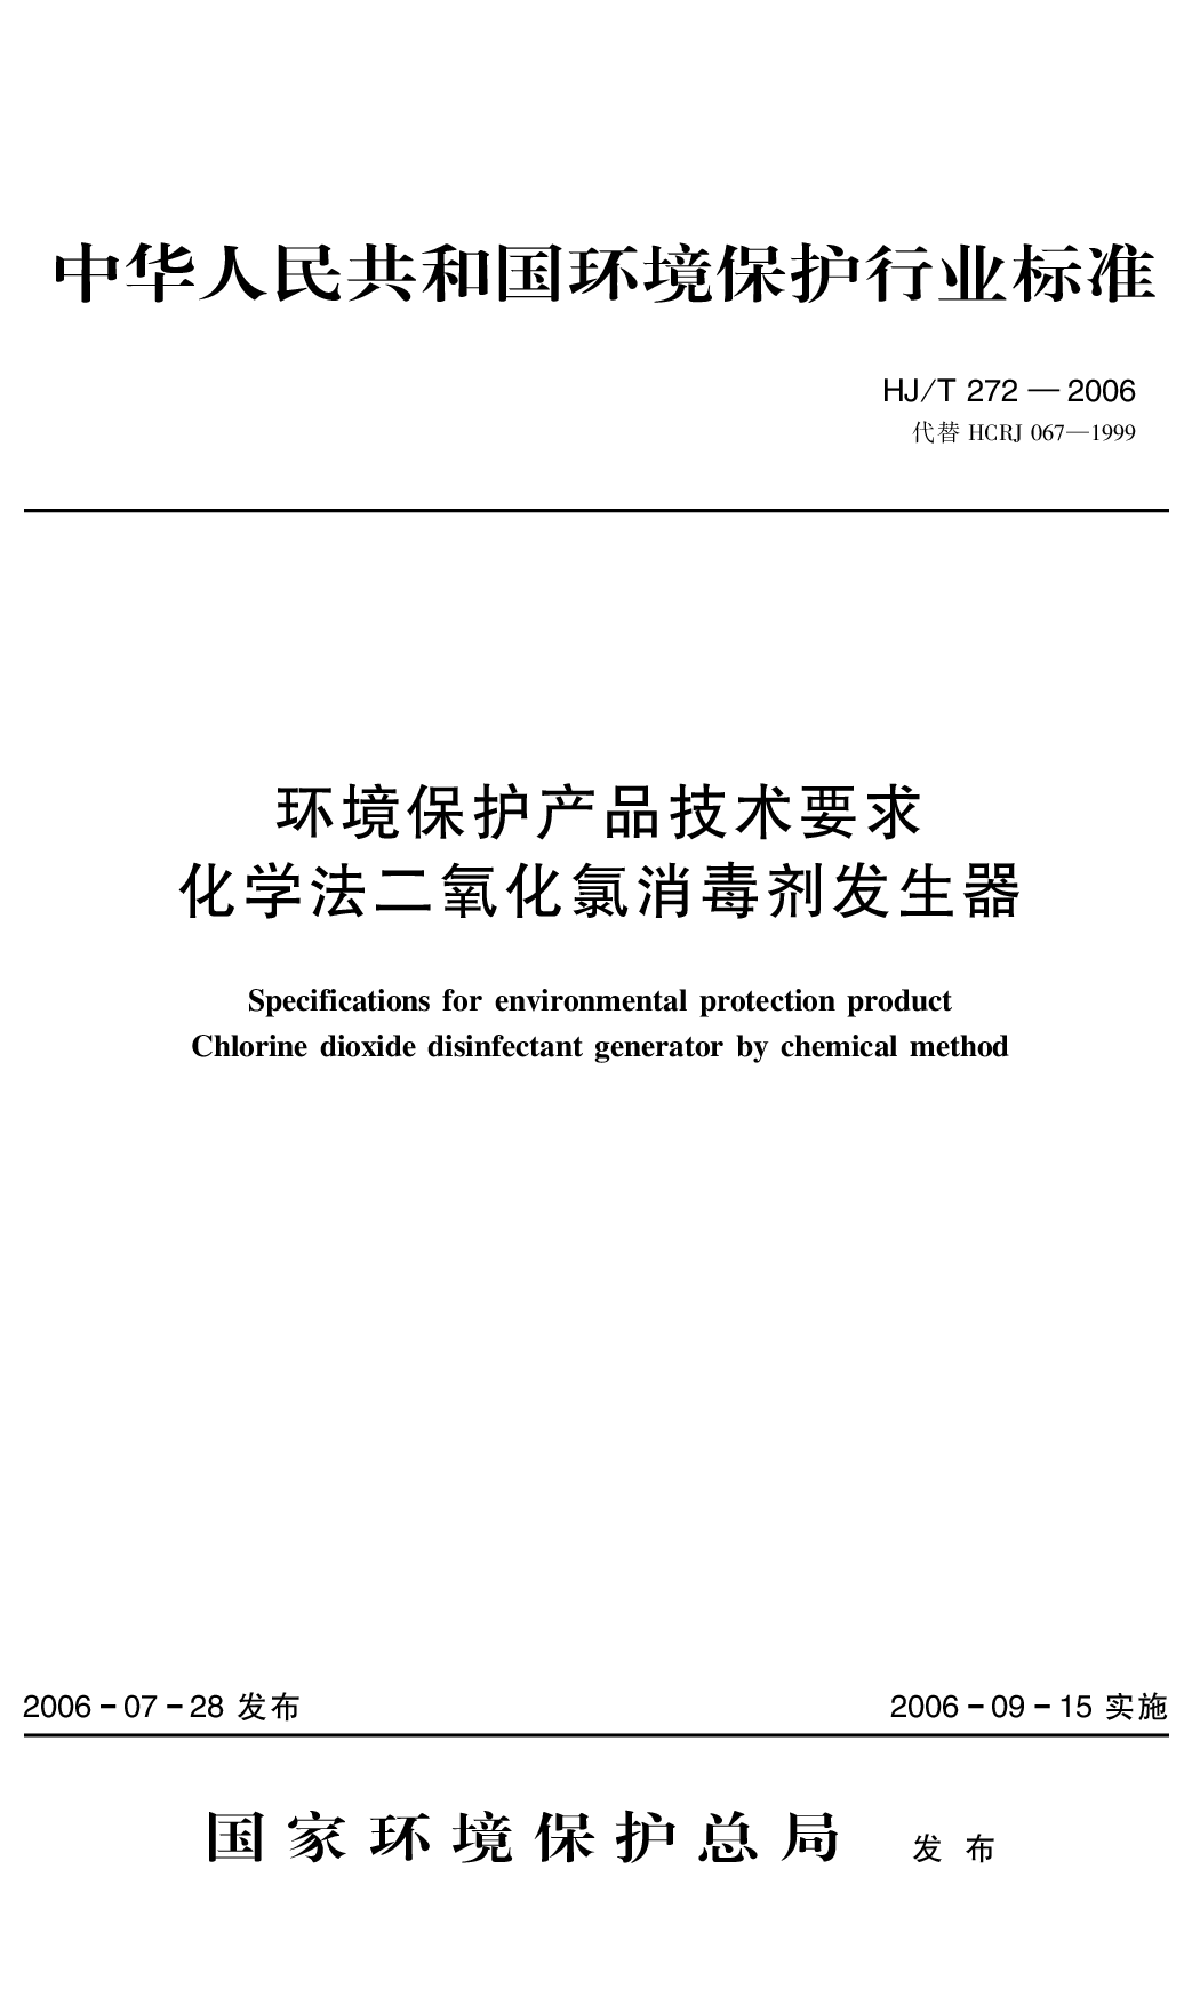 HJ_T 272-2006 环境保护产品技术要求 化学法二氧化氯消毒剂发生器